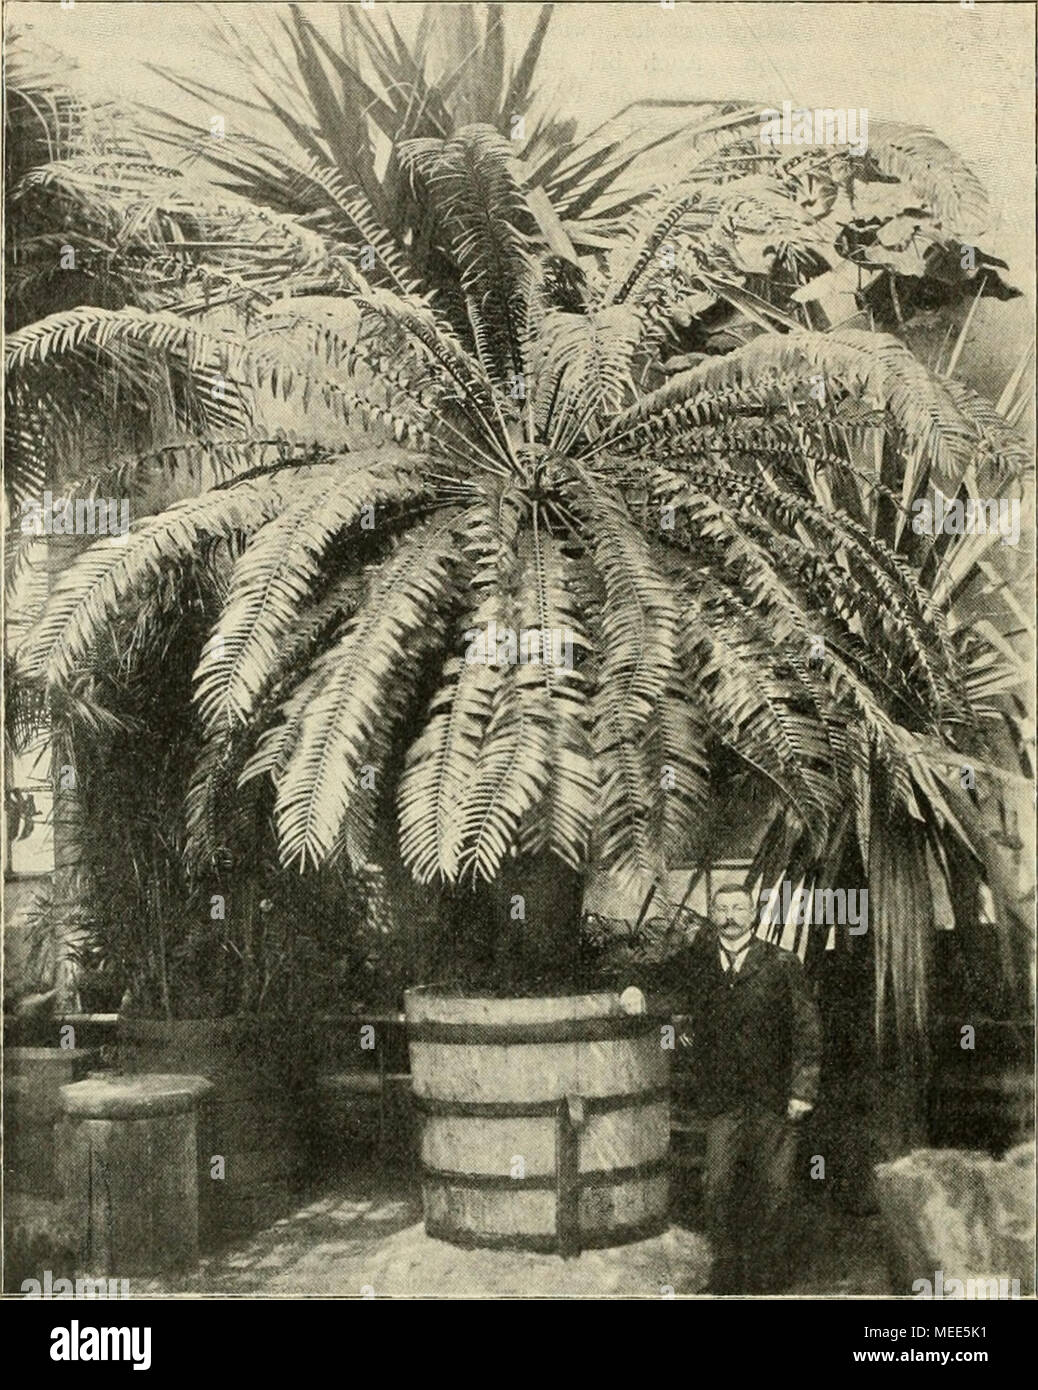 . Die Gartenwelt . Encephalartos longifolius Lehm. — Nebenstehende Abbildung zeigt eine der schönsten Cycadeen der hiesigen Sammlung. Eine bauliche Veränderung ermöglichte die Aufnahme in dem so raumbeengten Palmen- hause, in welchem diese Pflanze unter- gebracht ist. Es ist dies eine der ältesten und wertvollsten Cycadeen des Gartens; sie befindet sich seit etwa &quot;o Jahren im Besitze desselben. Die ungefähr 300 Jahre alte Pflanze hat eine Stattimhöhe von 2 m bei einem Umfange von i m. Der mit Schuppen und Blattstielresten bedeckte Stamm fällt recht angenehm durch seinen schlanken gleichmä Stock Photo